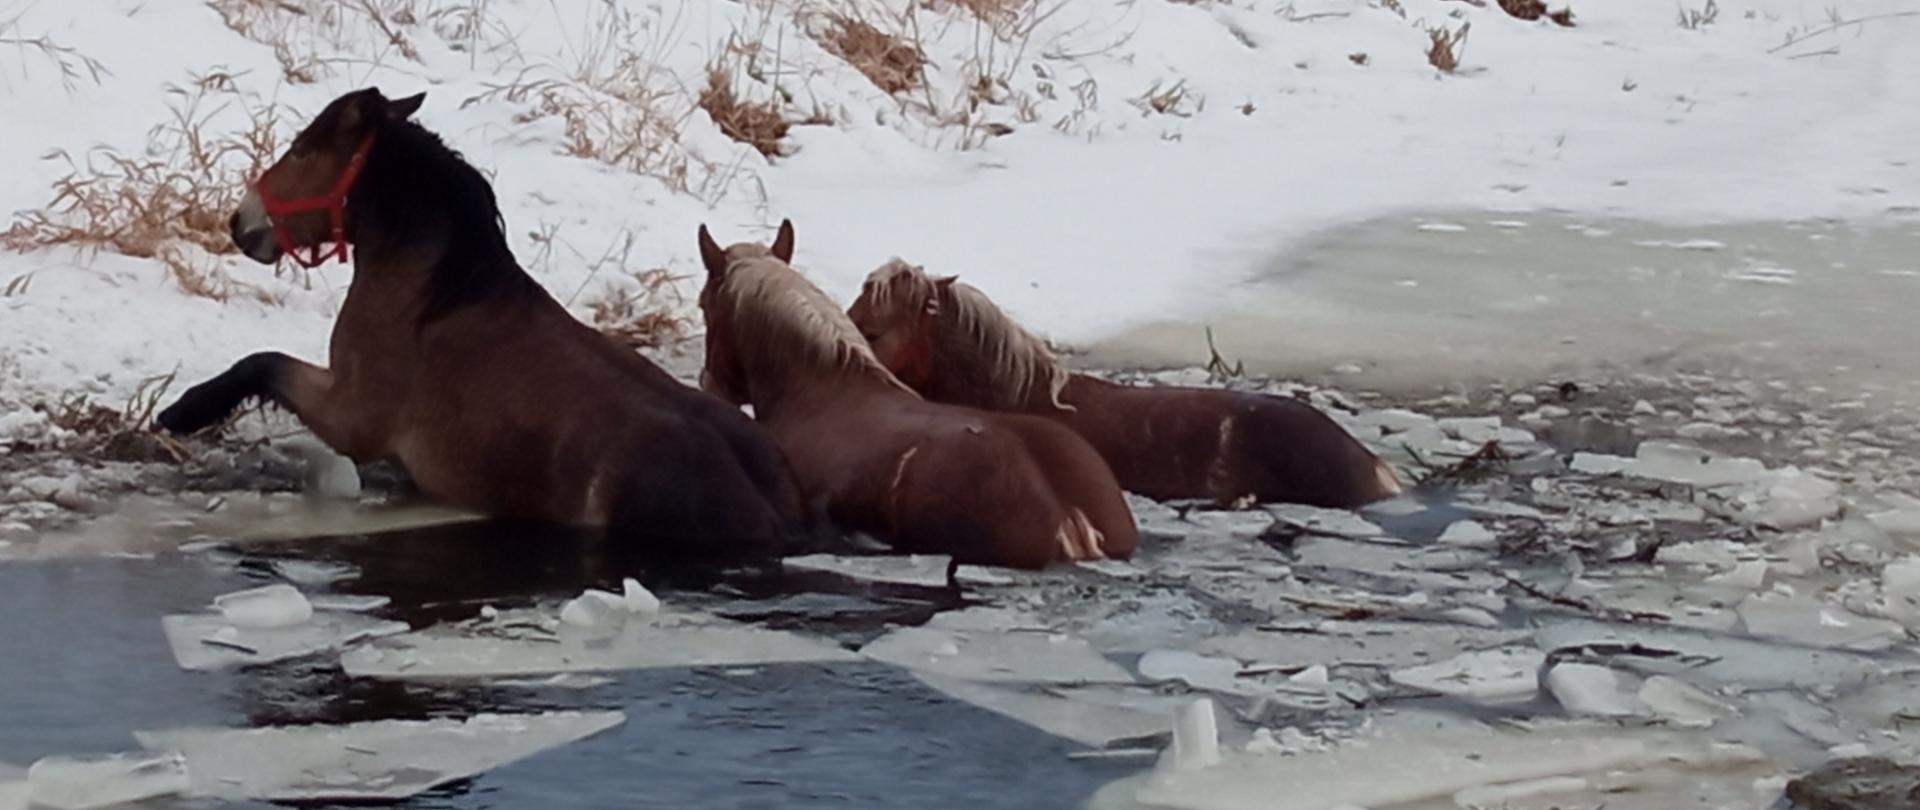 Zdjęcie przedstawia trzy konie w rzece, które nie mogą wydostać się na brzeg